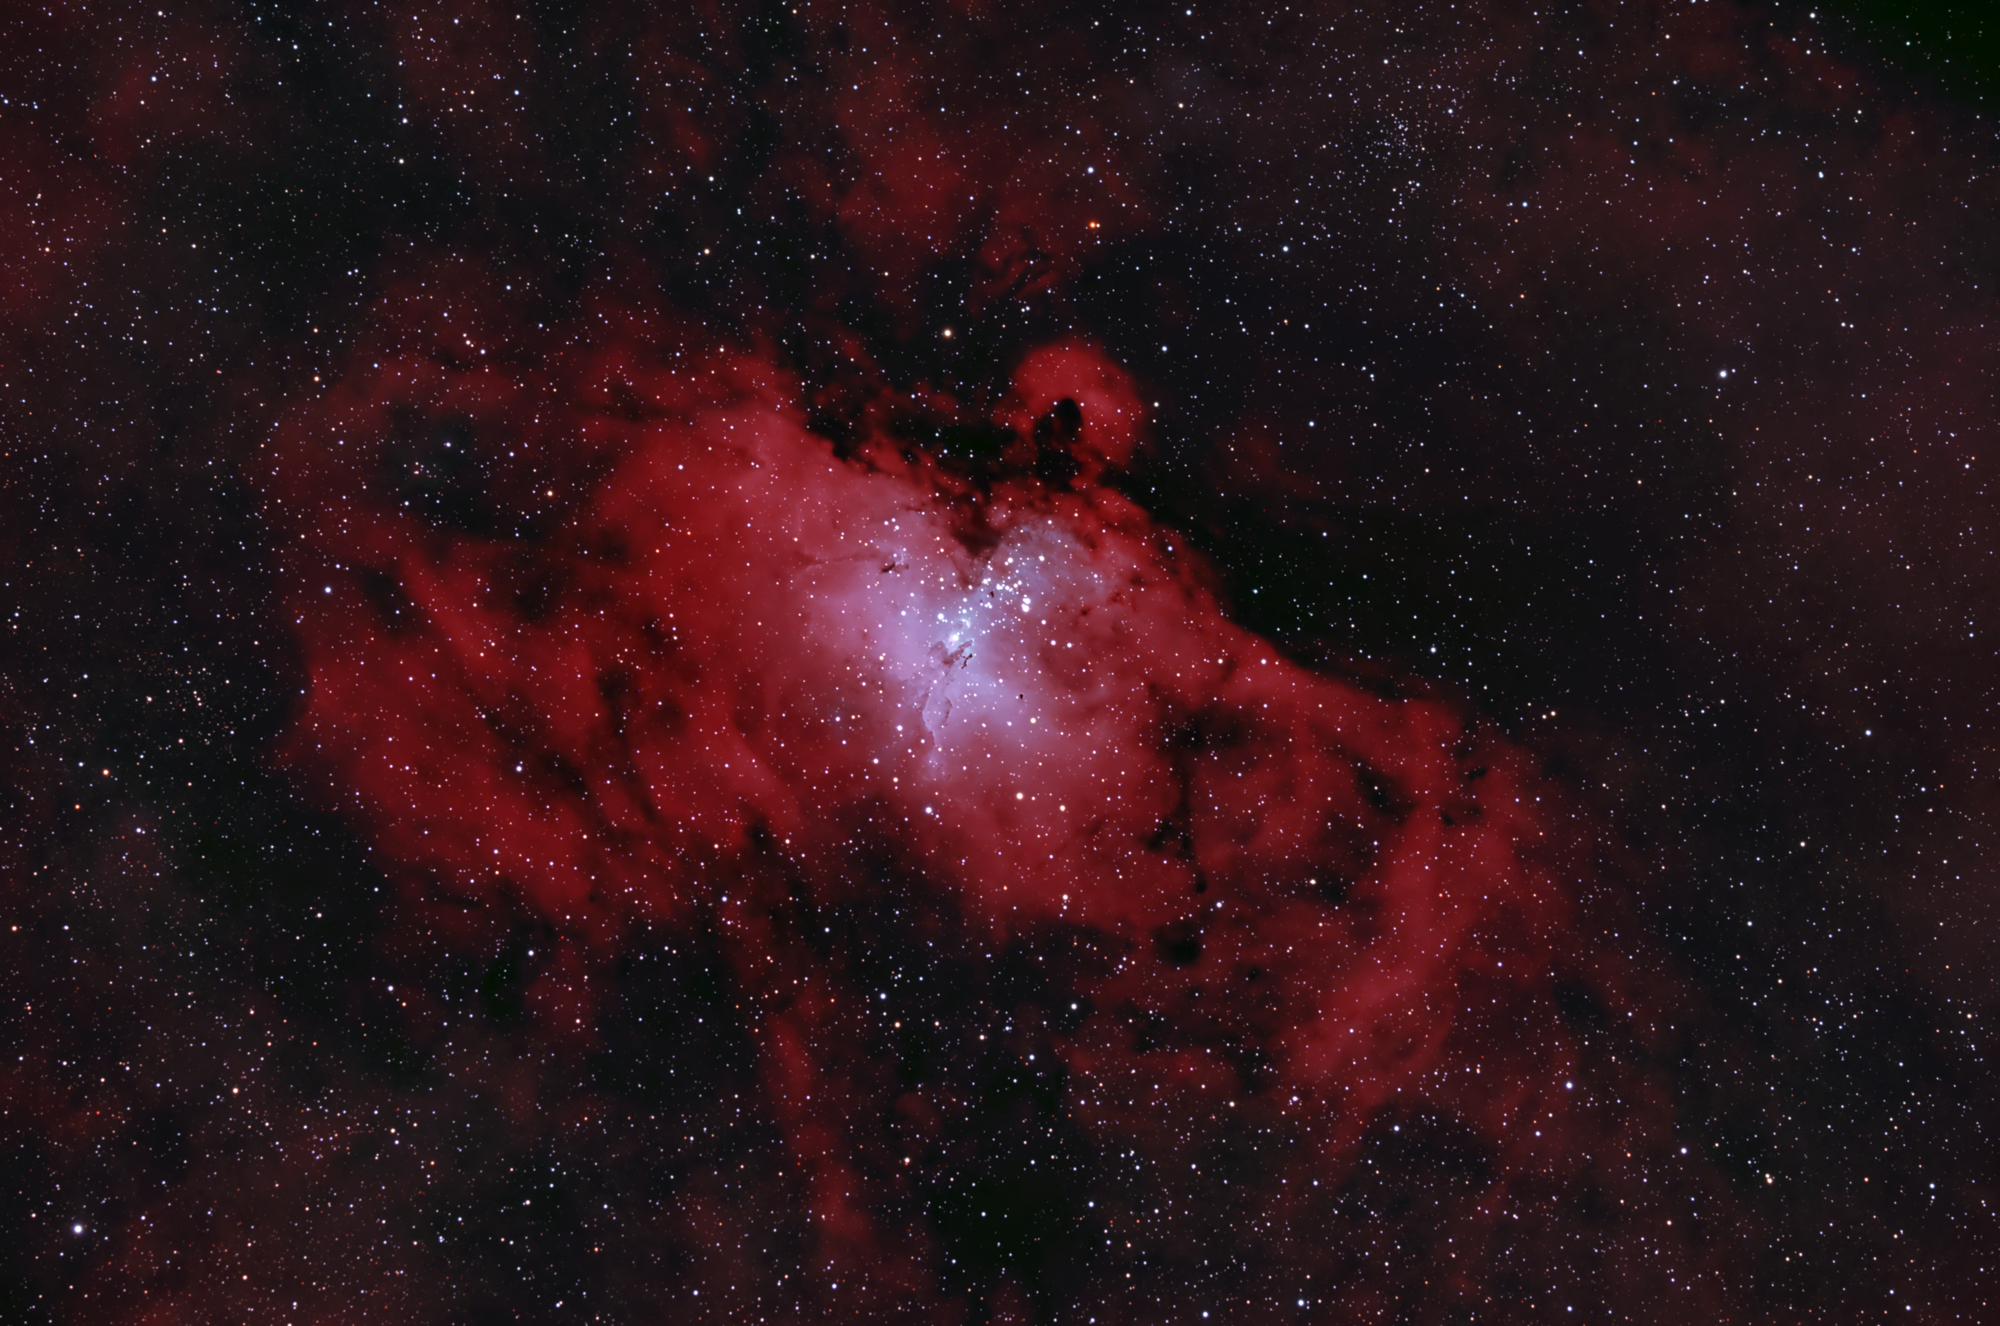 M 16 und NGC 6611 - Der Adler und sein Nest